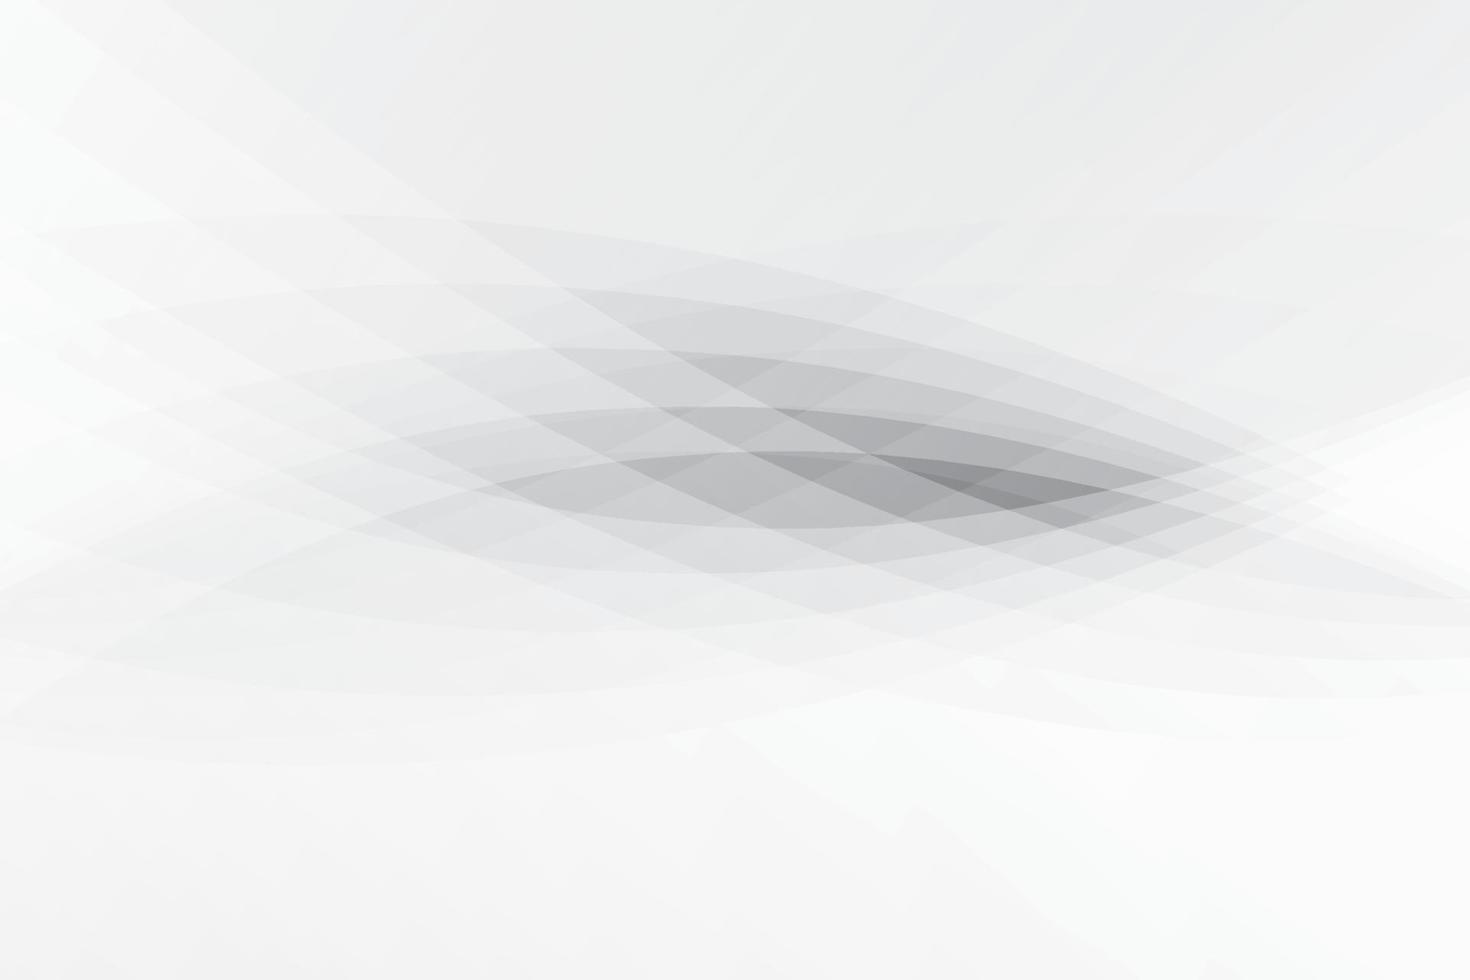 abstracte witte en grijze kleur, modern design achtergrond met geometrische vorm. vectorillustratie. vector